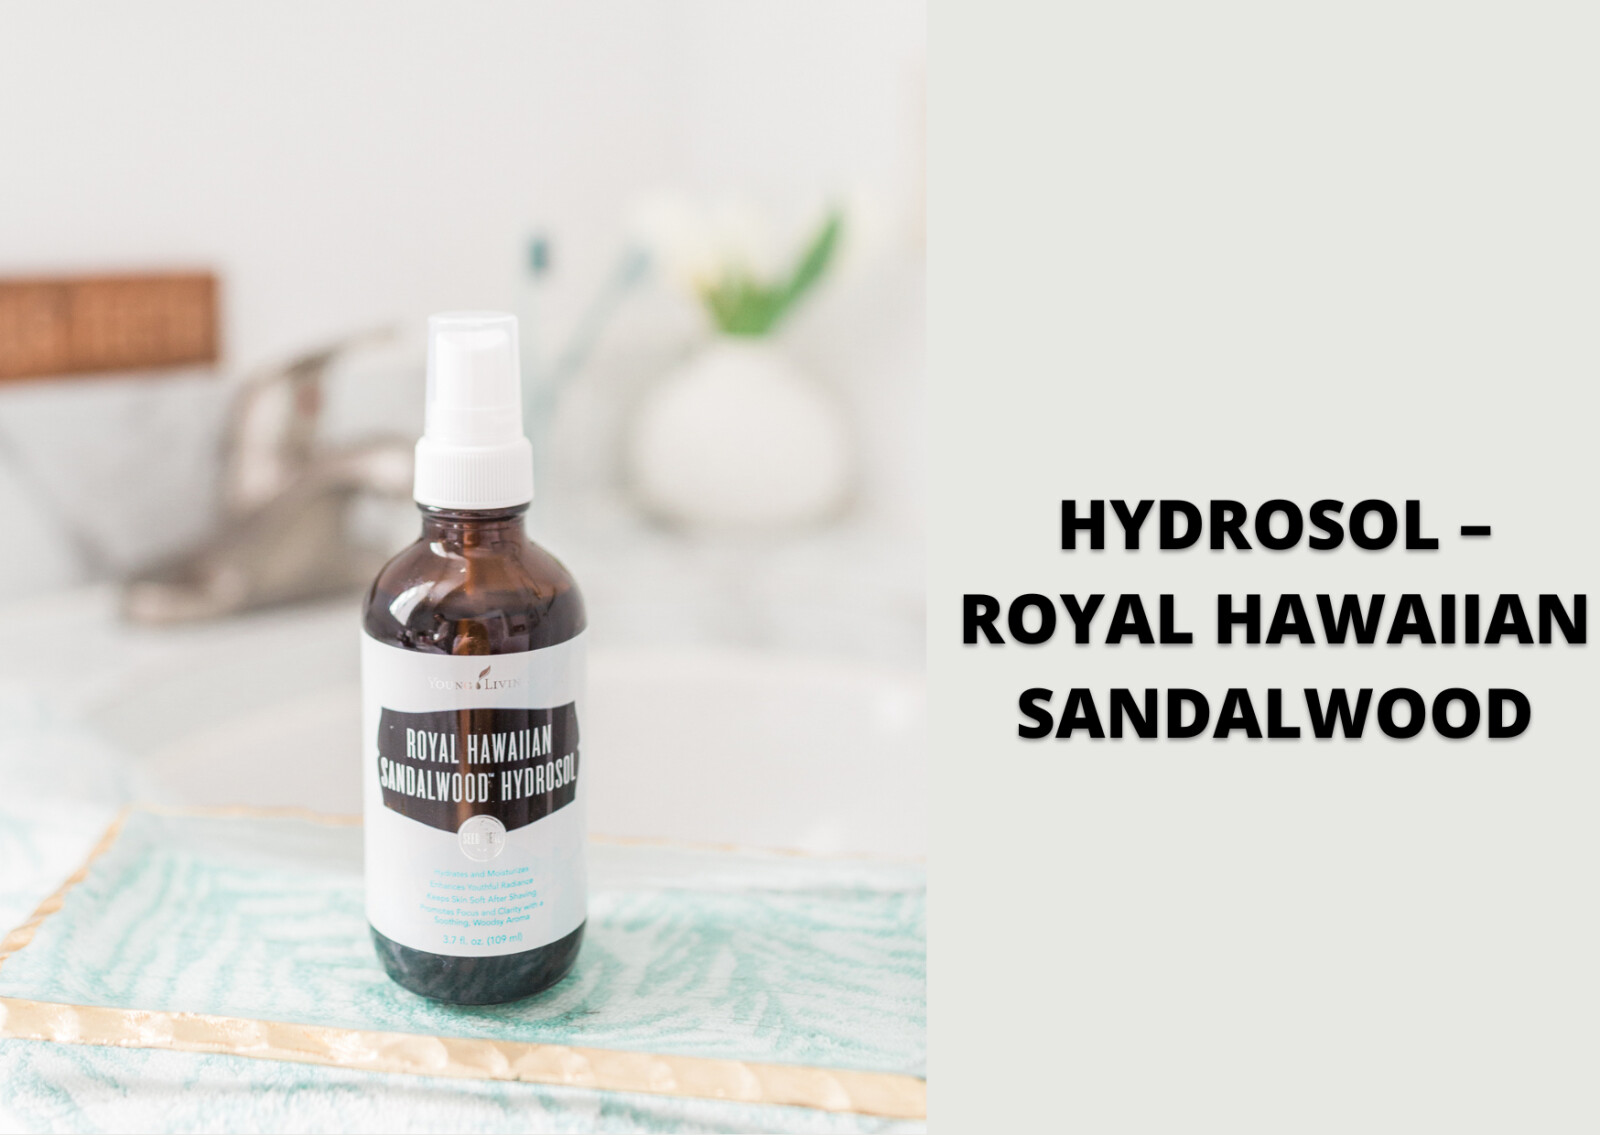 HYDROSOL – ROYAL HAWAIIAN SANDALWOOD